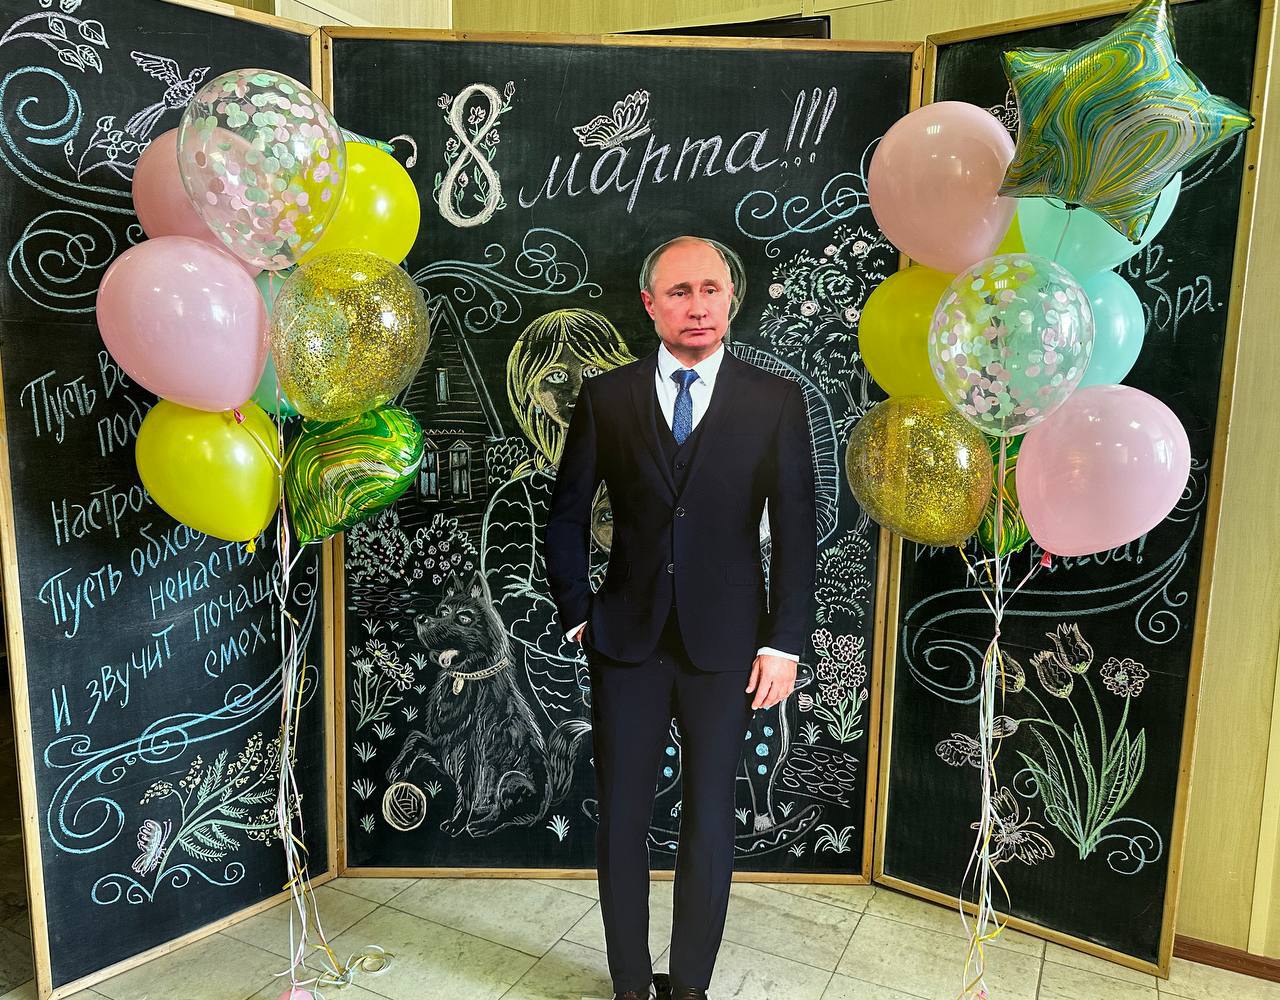 Жители Ельца требуют провести проверку из-за картонного Путина в фотозоне мэрии